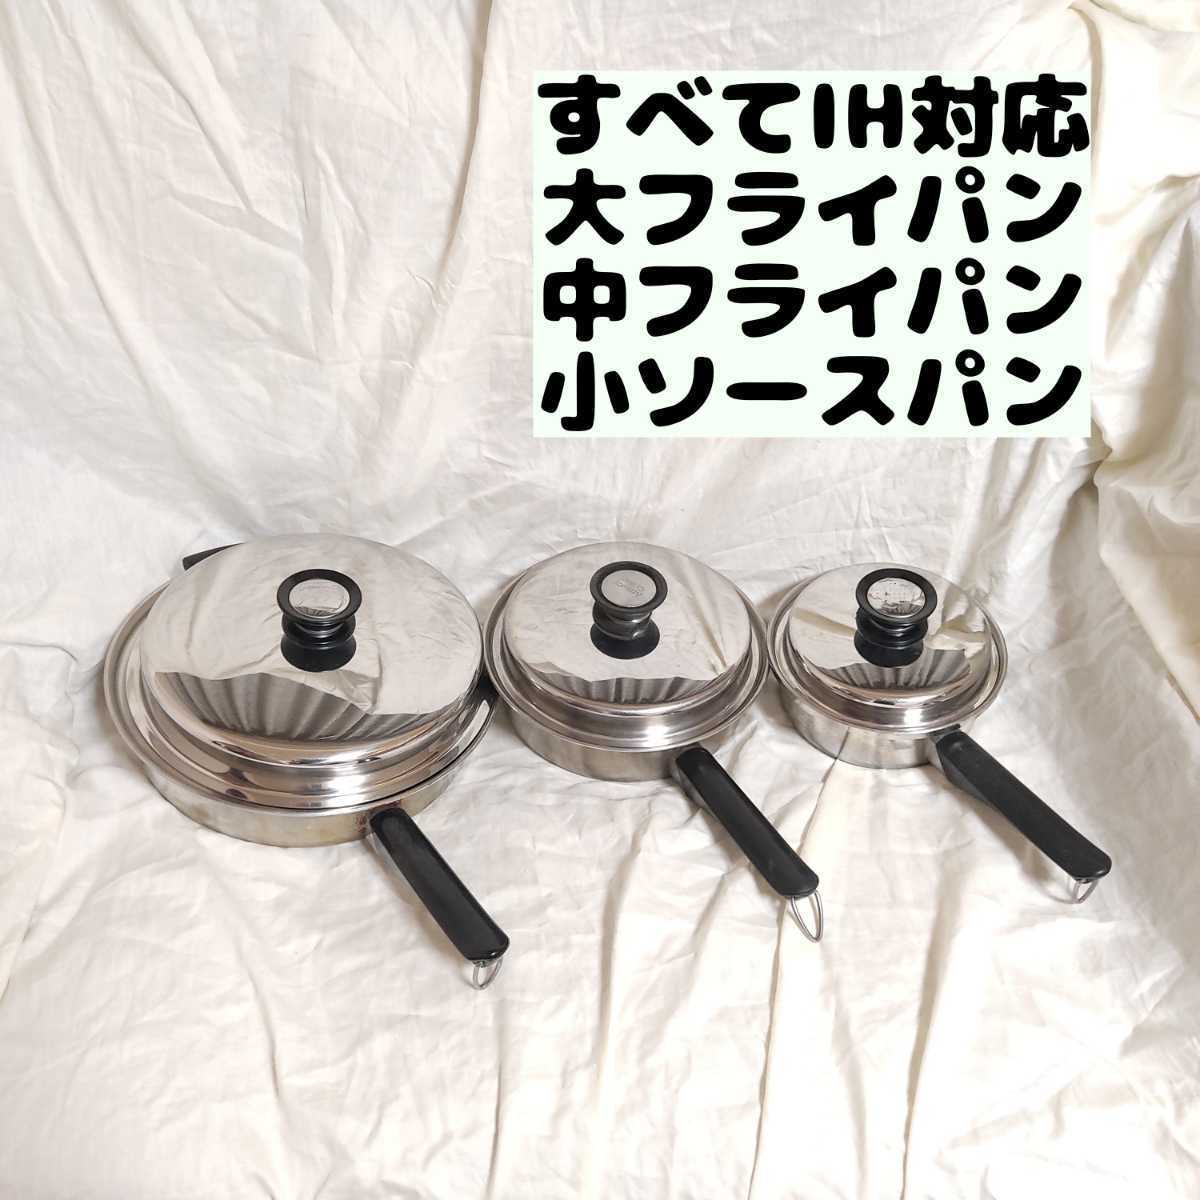 製造 【送料無料】アムウェイ クイーン 鍋 ソースパン&フライパンセット 調理器具